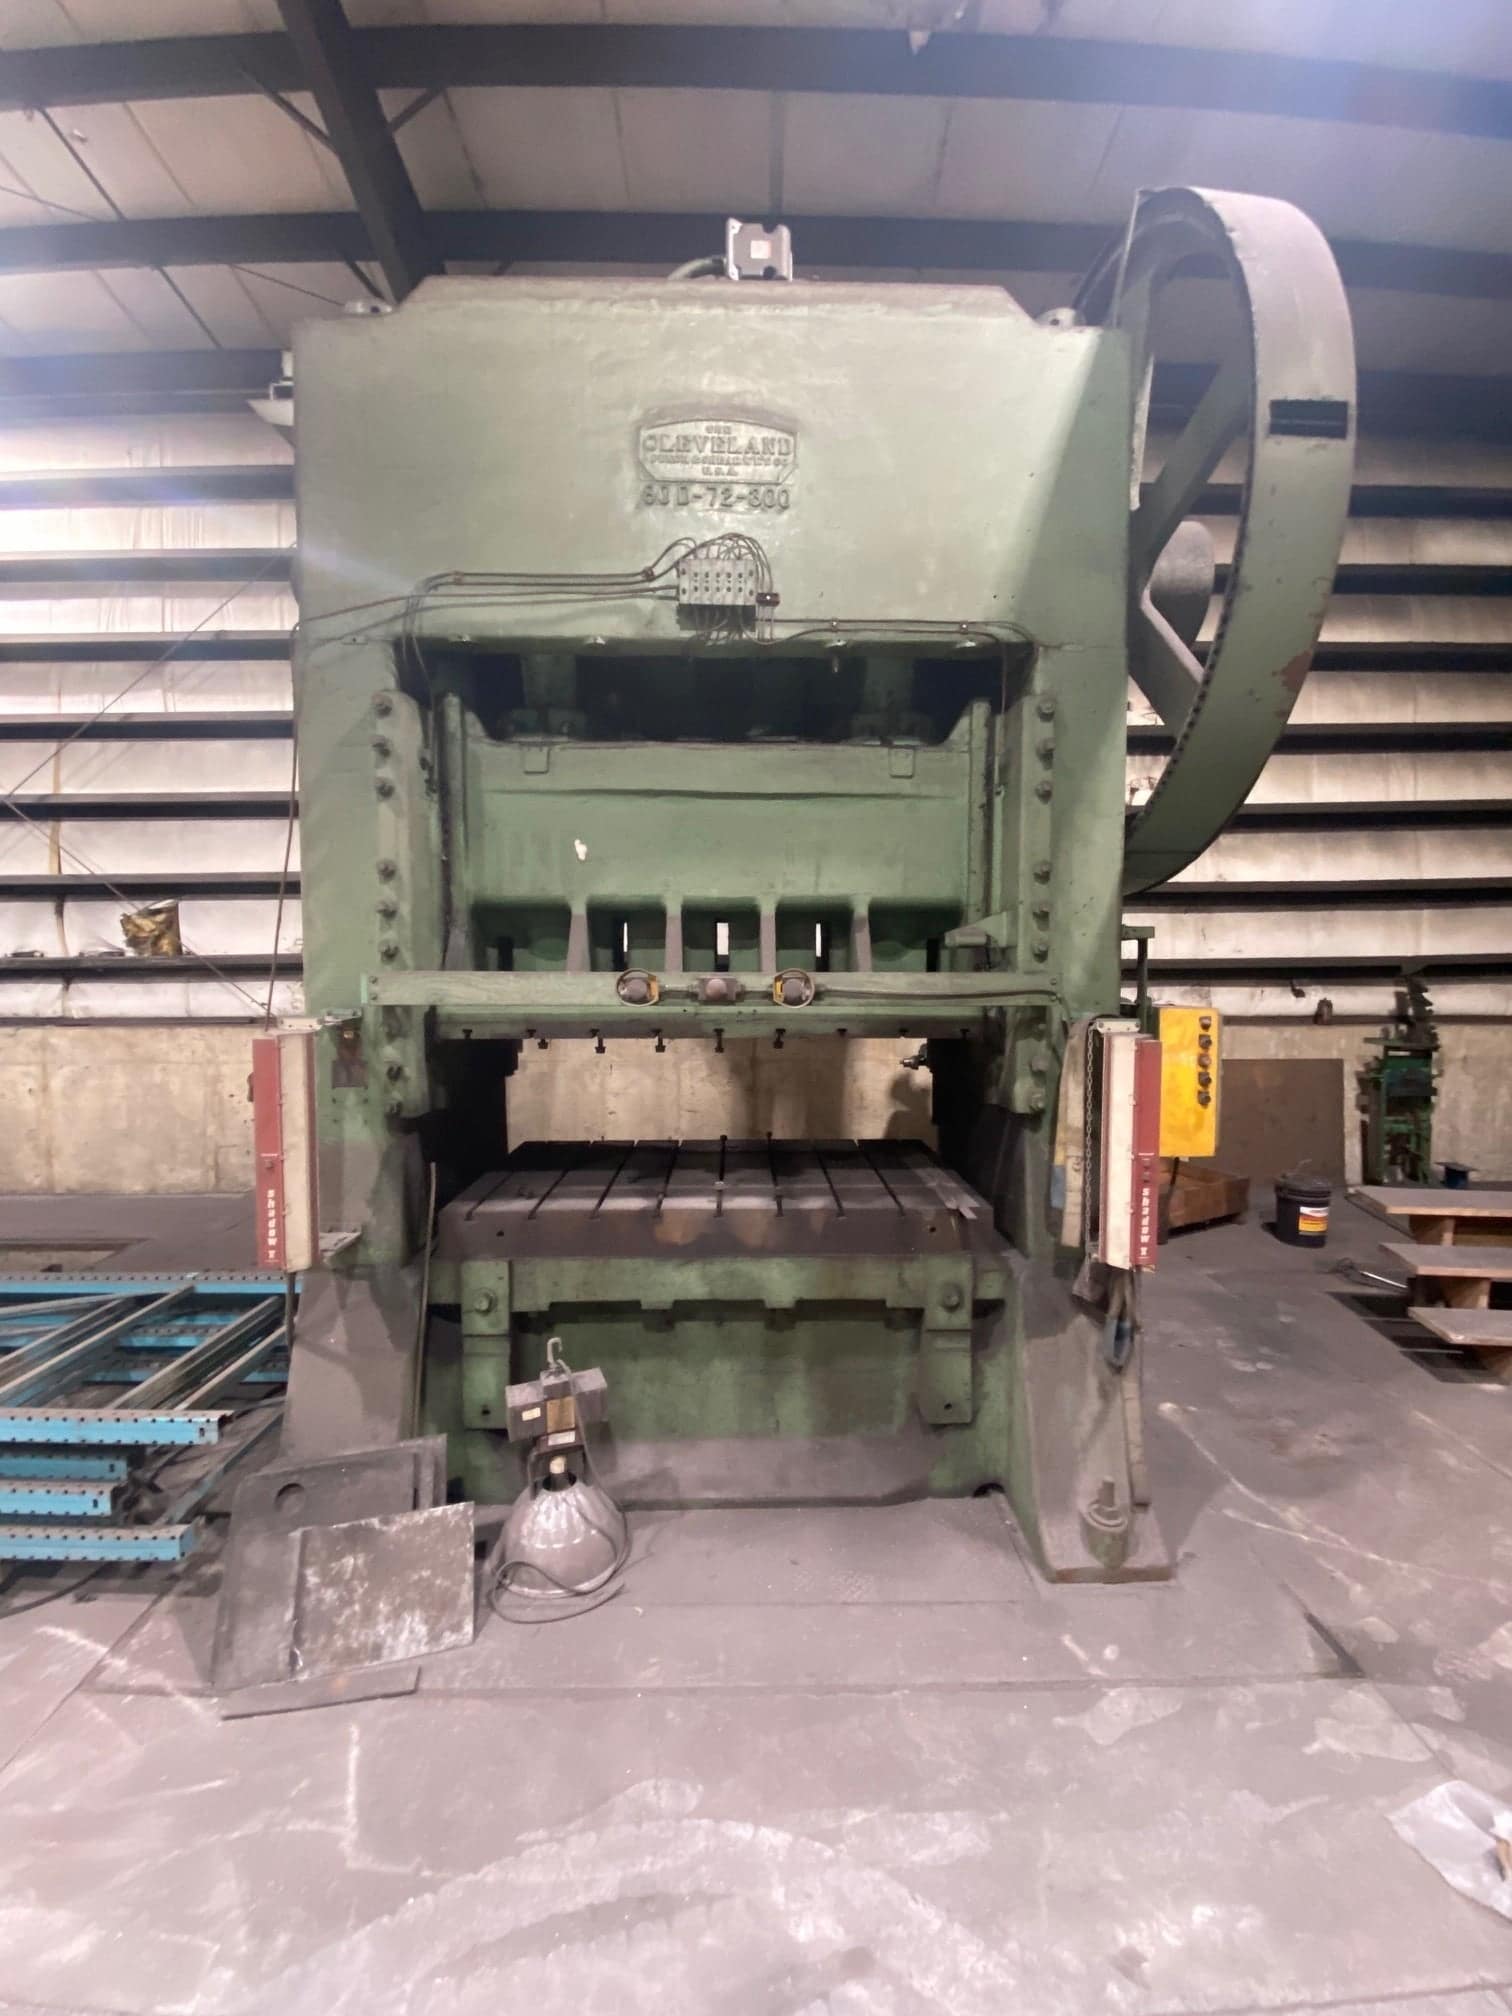 24 ton Heating Hydraulic Press Laboratory Supplier hydraulic press